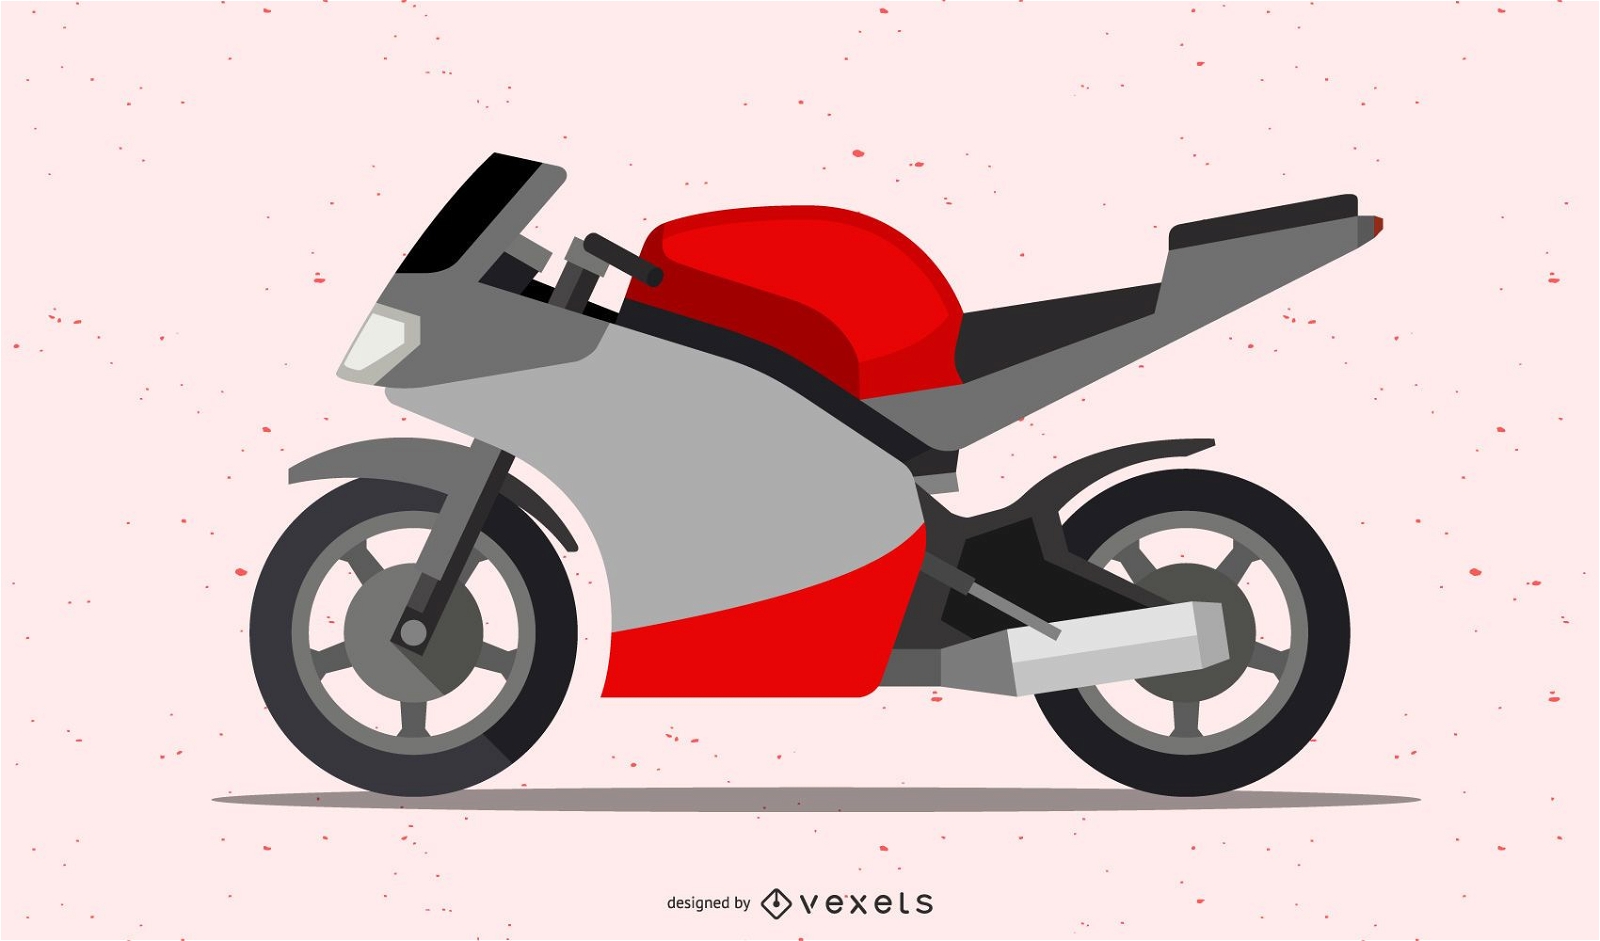 Ducati Diavel Motorrad Vektor